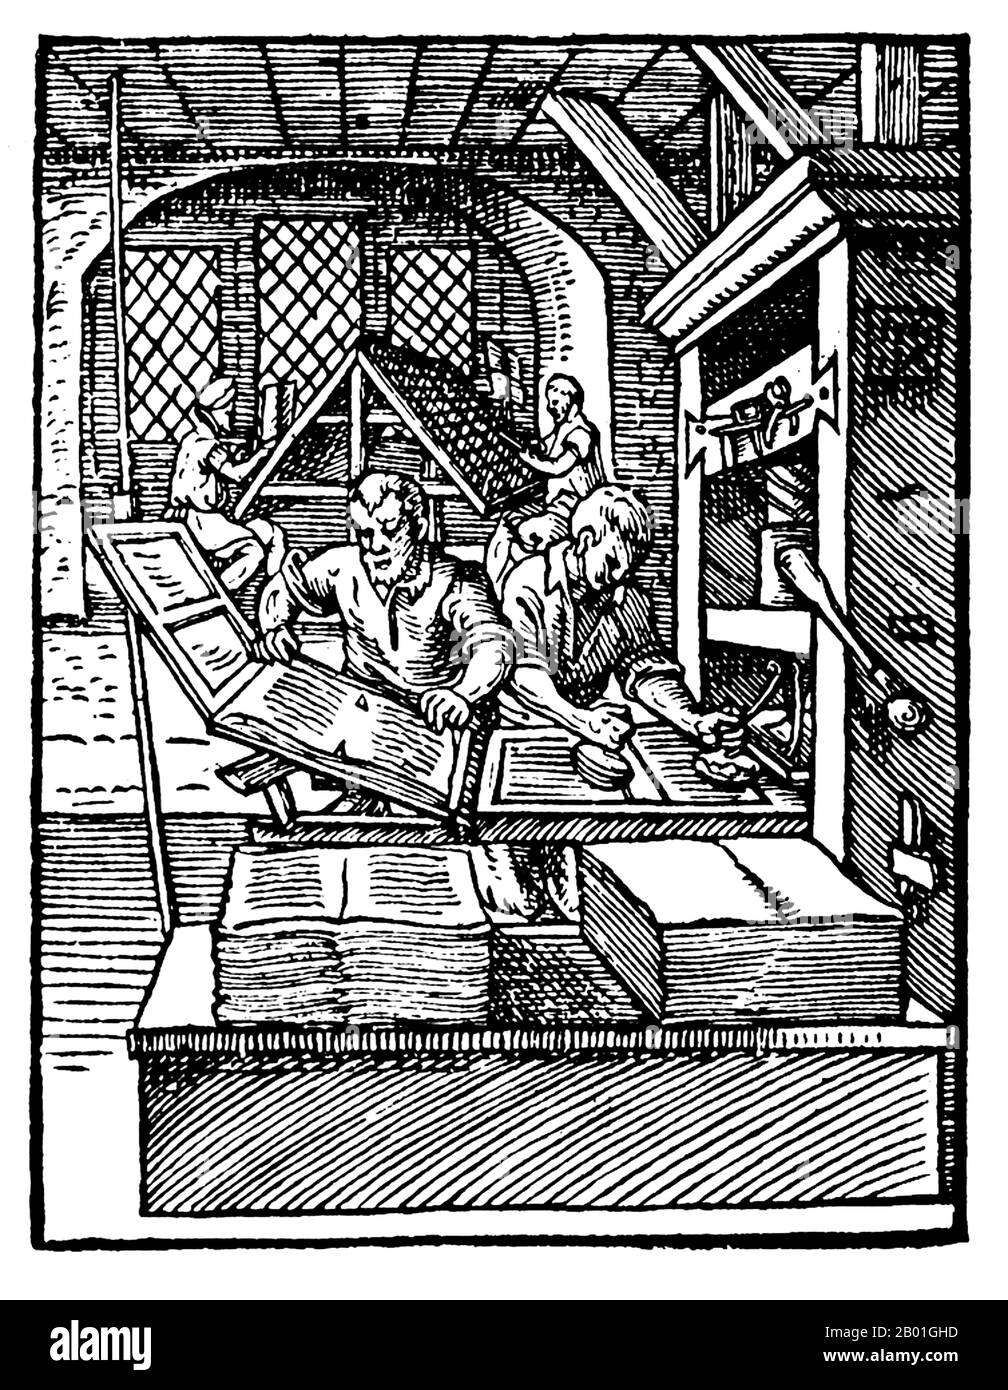 Alemania: Una imprenta mecánica del tipo diseñada por Johannes Gutenberg. Grabado en madera por Jost Amman (1539 - 17 de marzo de 1591), c. 1568. A la izquierda en primer plano, una impresora elimina una página impresa de la prensa. La impresora de la derecha está imprimiendo tinta en la plancha. En segundo plano, los compositores utilizan el tipo de conversión. Las prensas de este tipo podrían hacer 240 impresiones por hora. Foto de stock